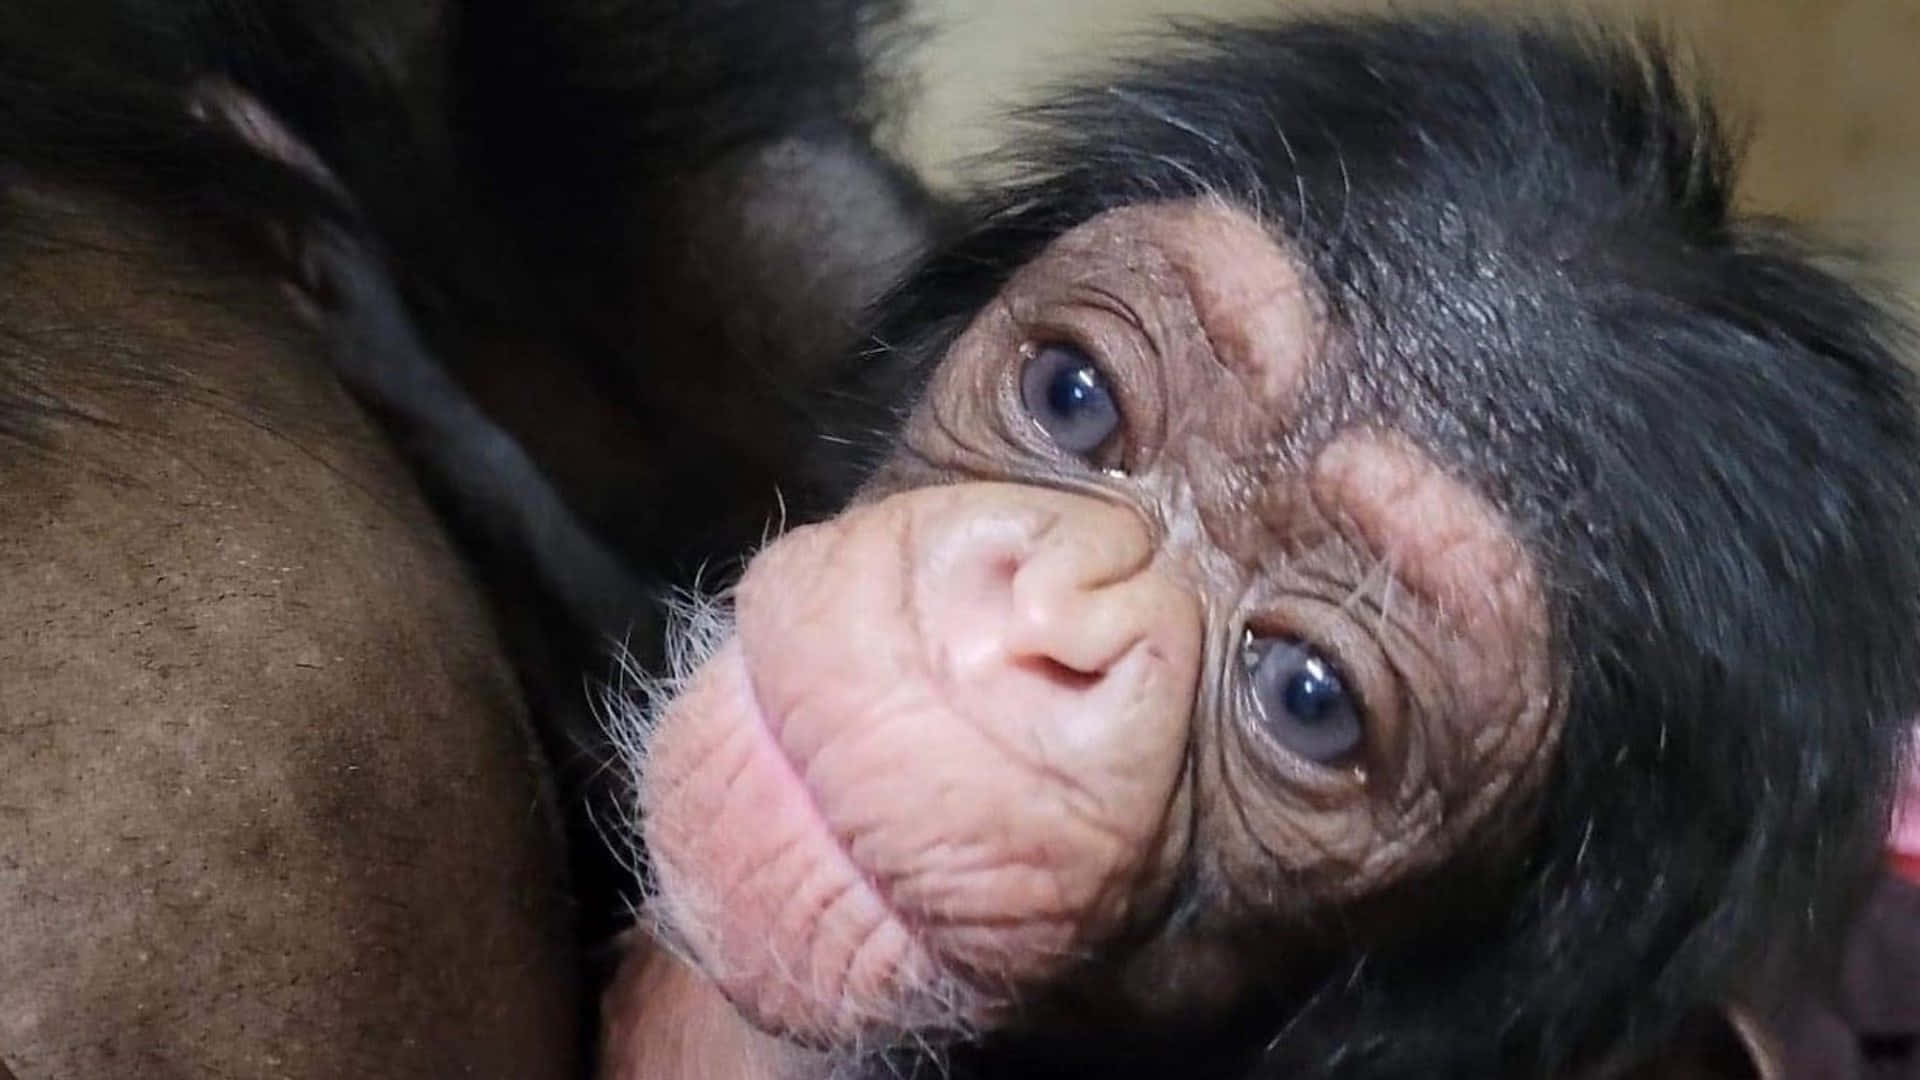 Closeup Photo of a Chimpanzee